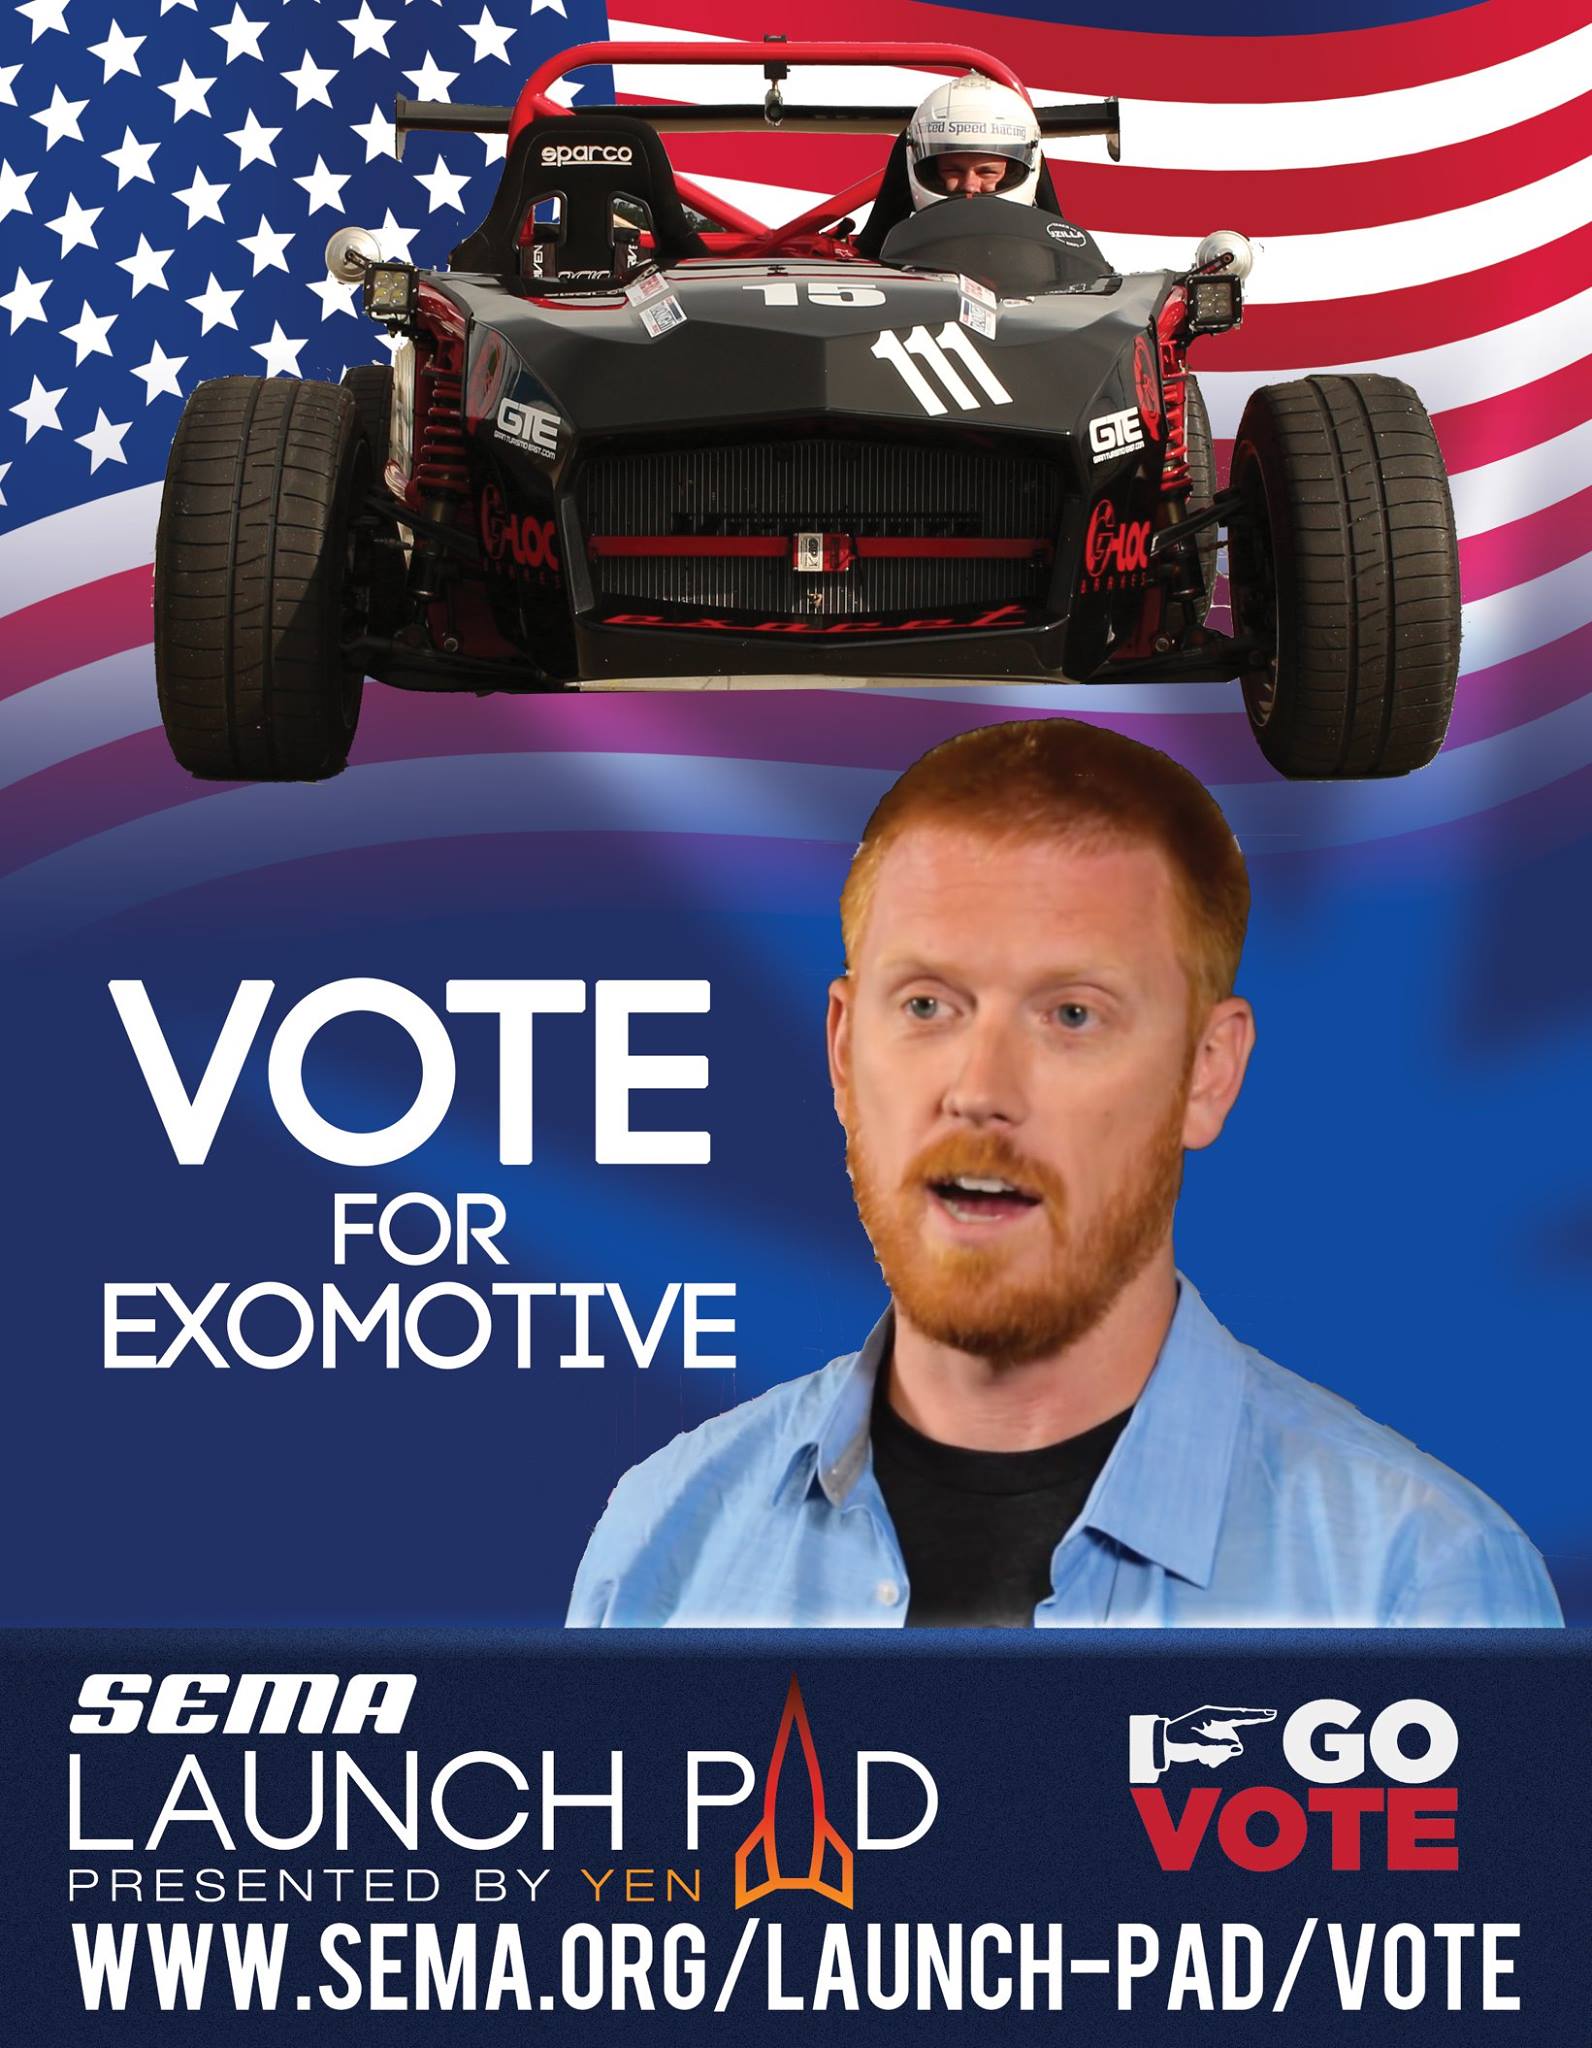 Exomotive needs your vote!